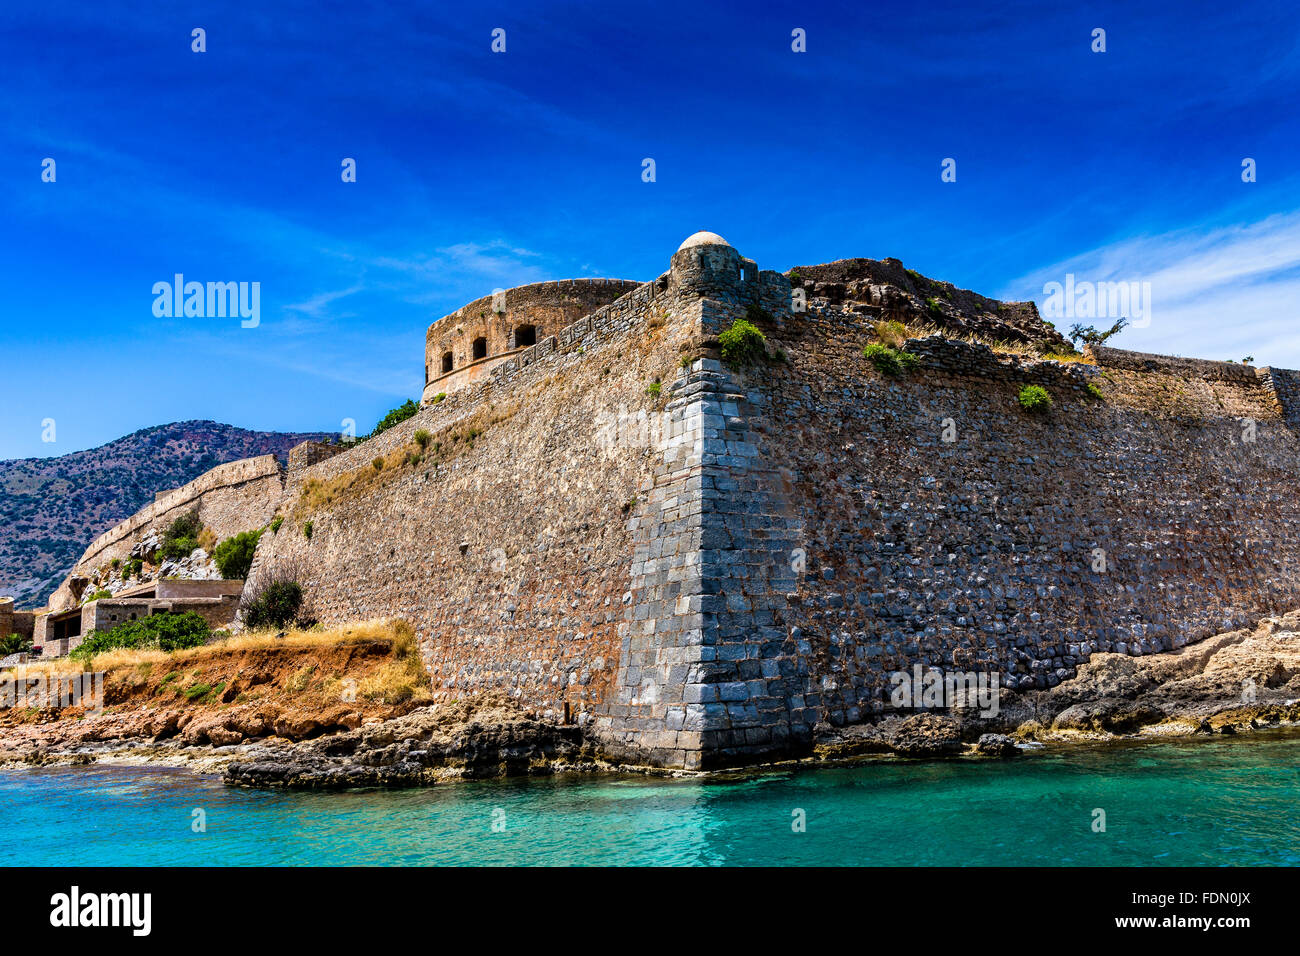 Festung auf unbewohnte griechische Insel Spinalonga oder Kalydon, Golf von Mirabello, Kreta, Griechenland Stockfoto